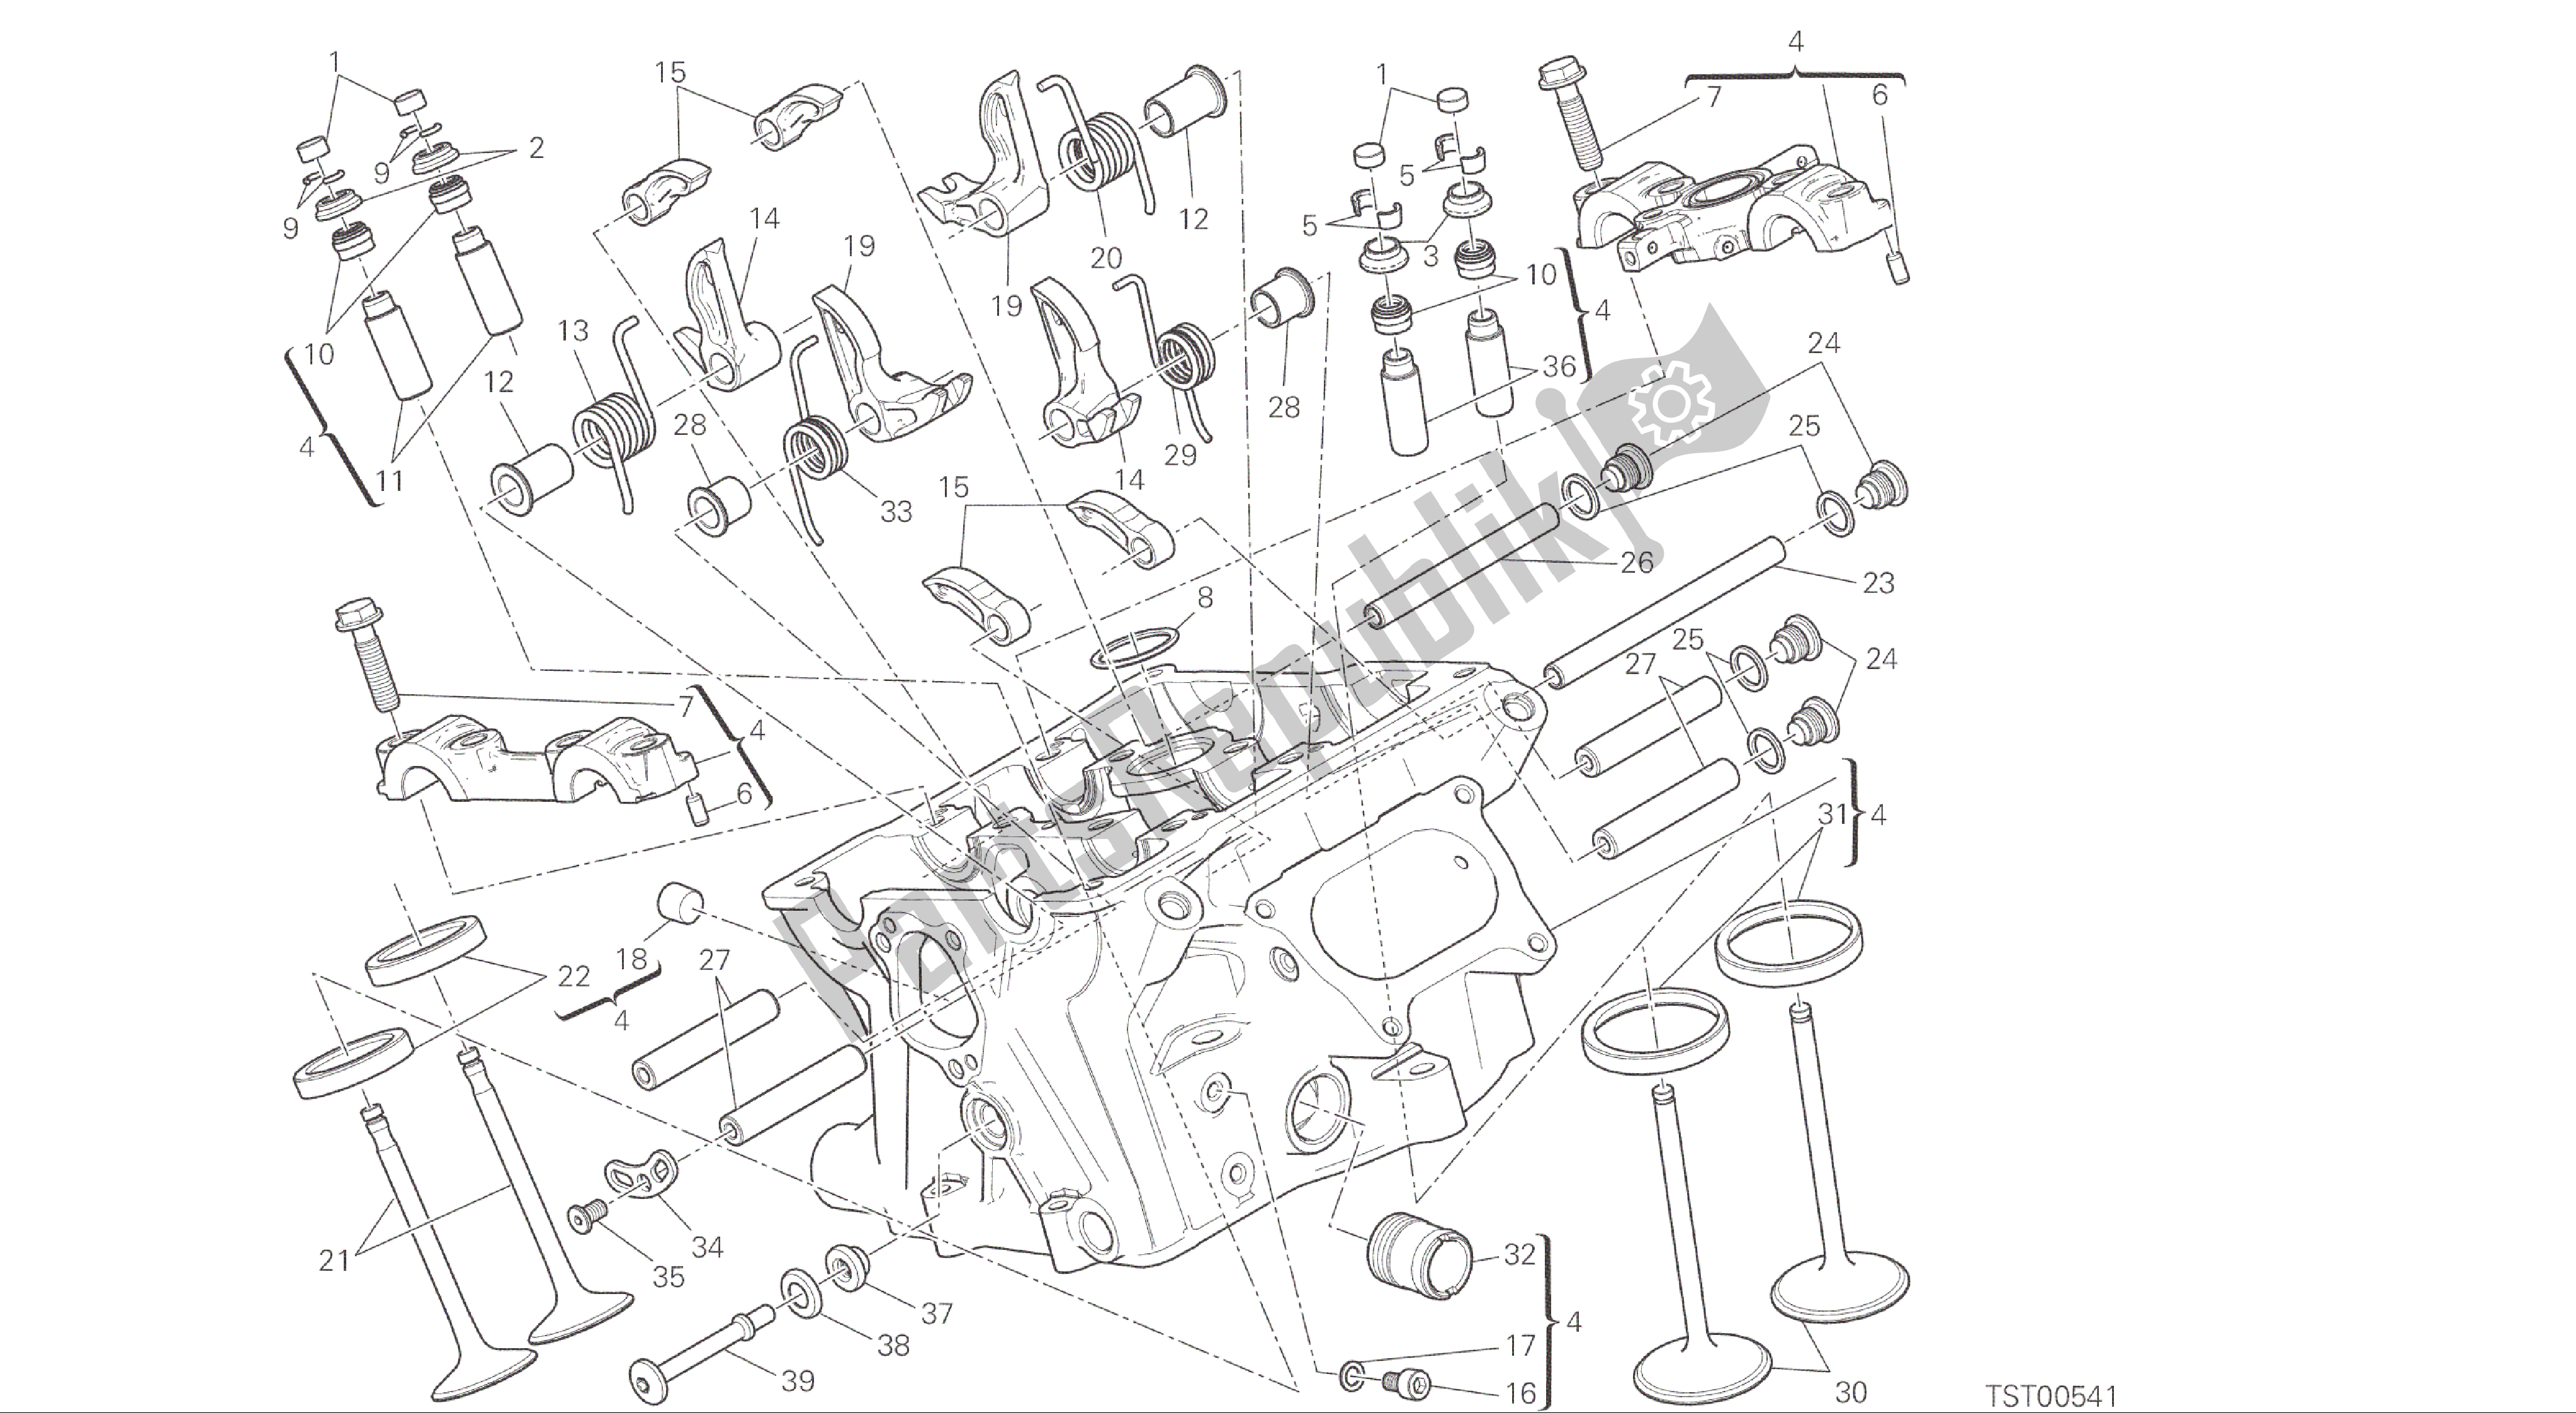 Alle onderdelen voor de Tekening 015 - Verticale Kop [mod: 1299; Xst: Aus, Eur, Fra, Jap, Twn] Groepsmotor van de Ducati Panigale ABS 1299 2016